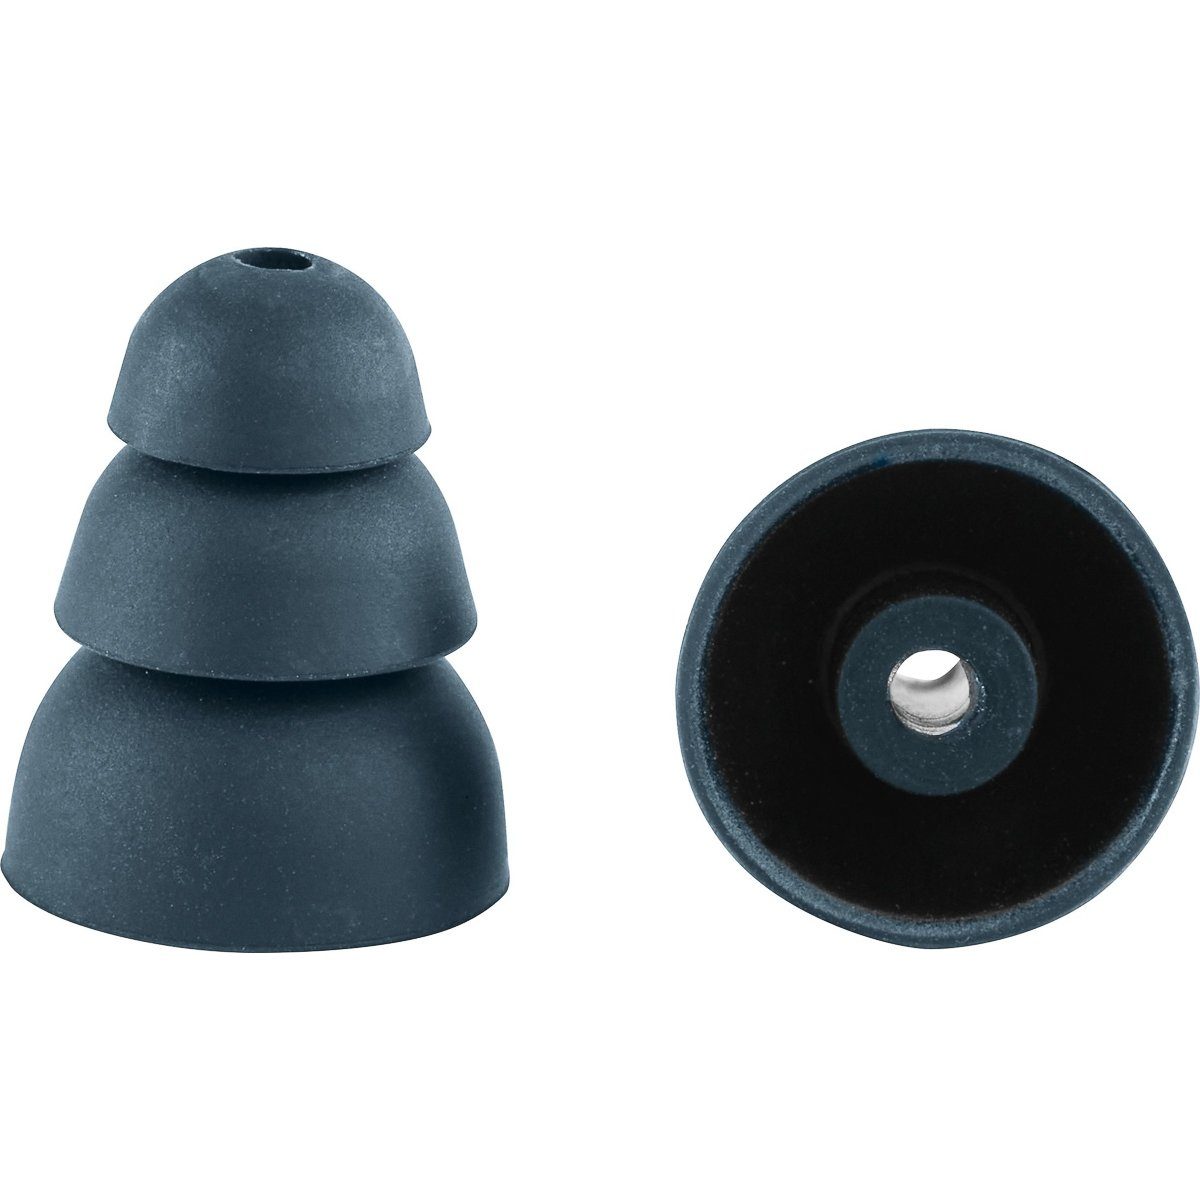 (577800) EB-SLC/12 Packung Festool 12er FESTOOL Ohrstöpsel Gehörschutzstöpsel